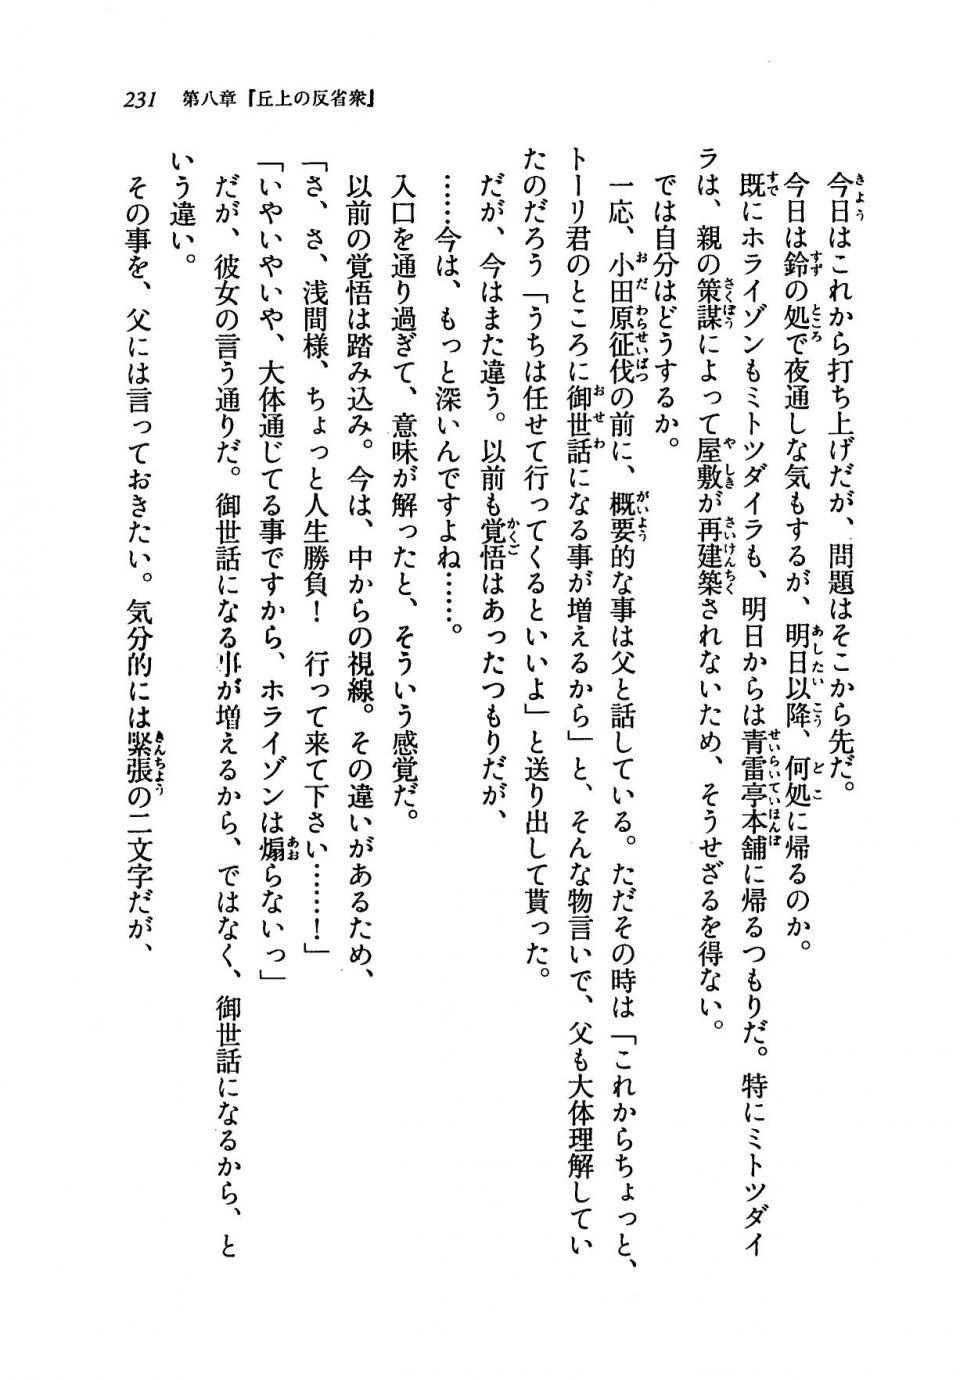 Kyoukai Senjou no Horizon LN Vol 19(8A) - Photo #231